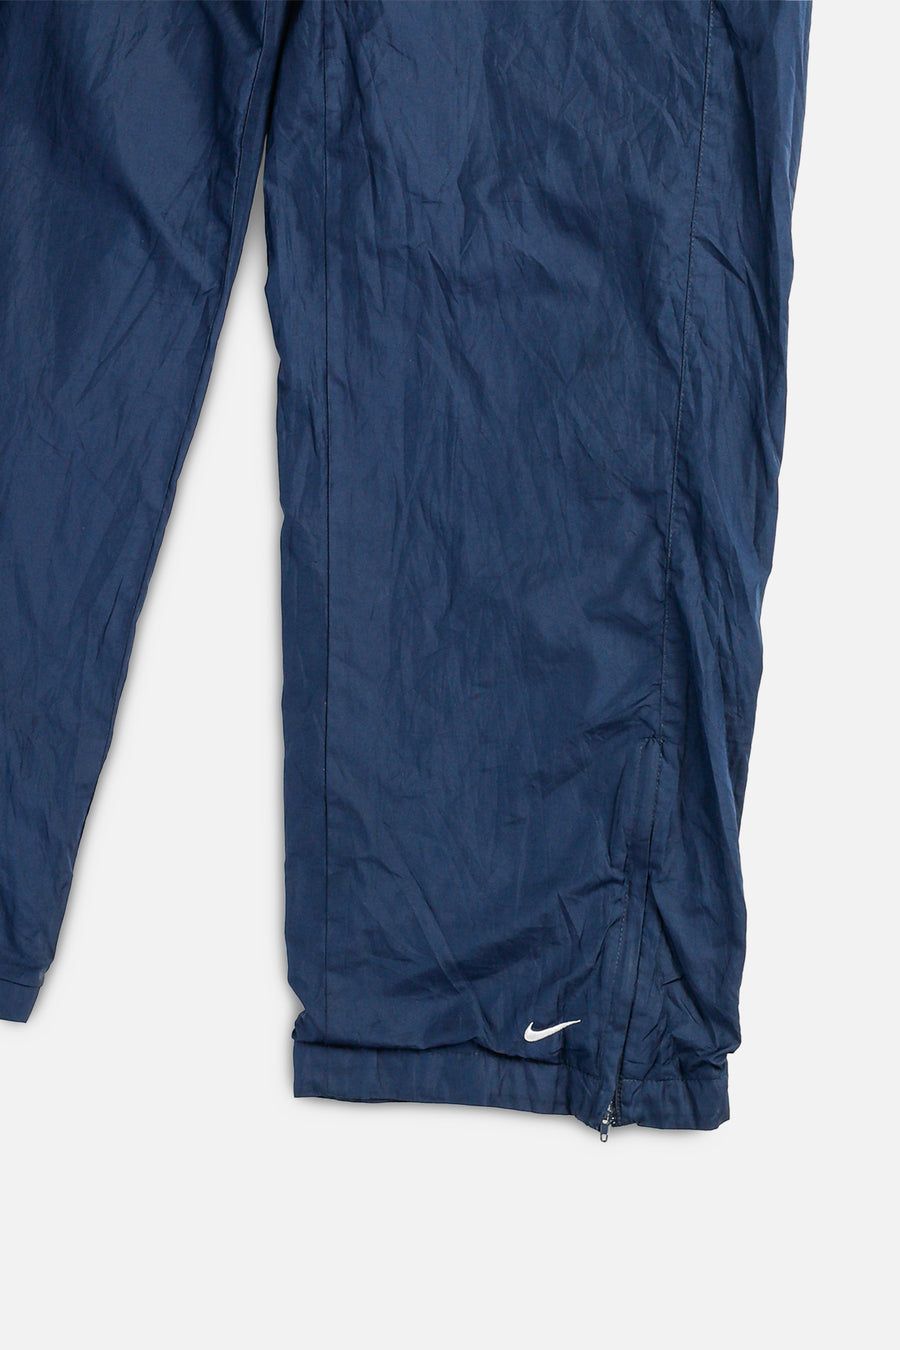 Vintage Nike Windbreaker Pants - Women's M